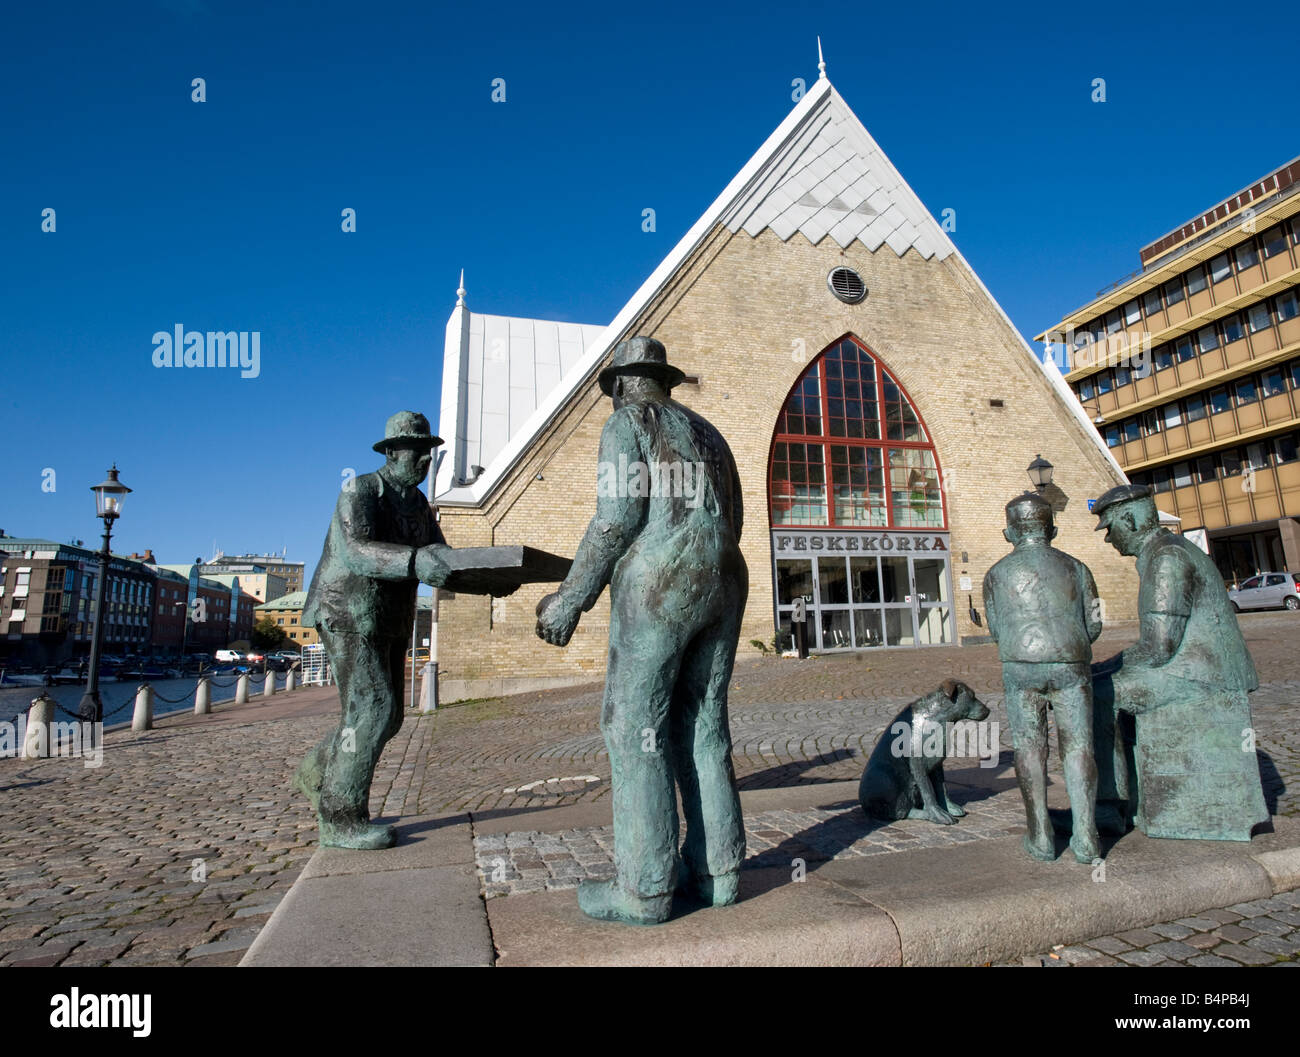 Bronzeplastik von Fischmarktarbeitern außerhalb des Fischmarktgebäudes von Feskekorka im Zentrum von Gothenburg Schweden Stockfoto